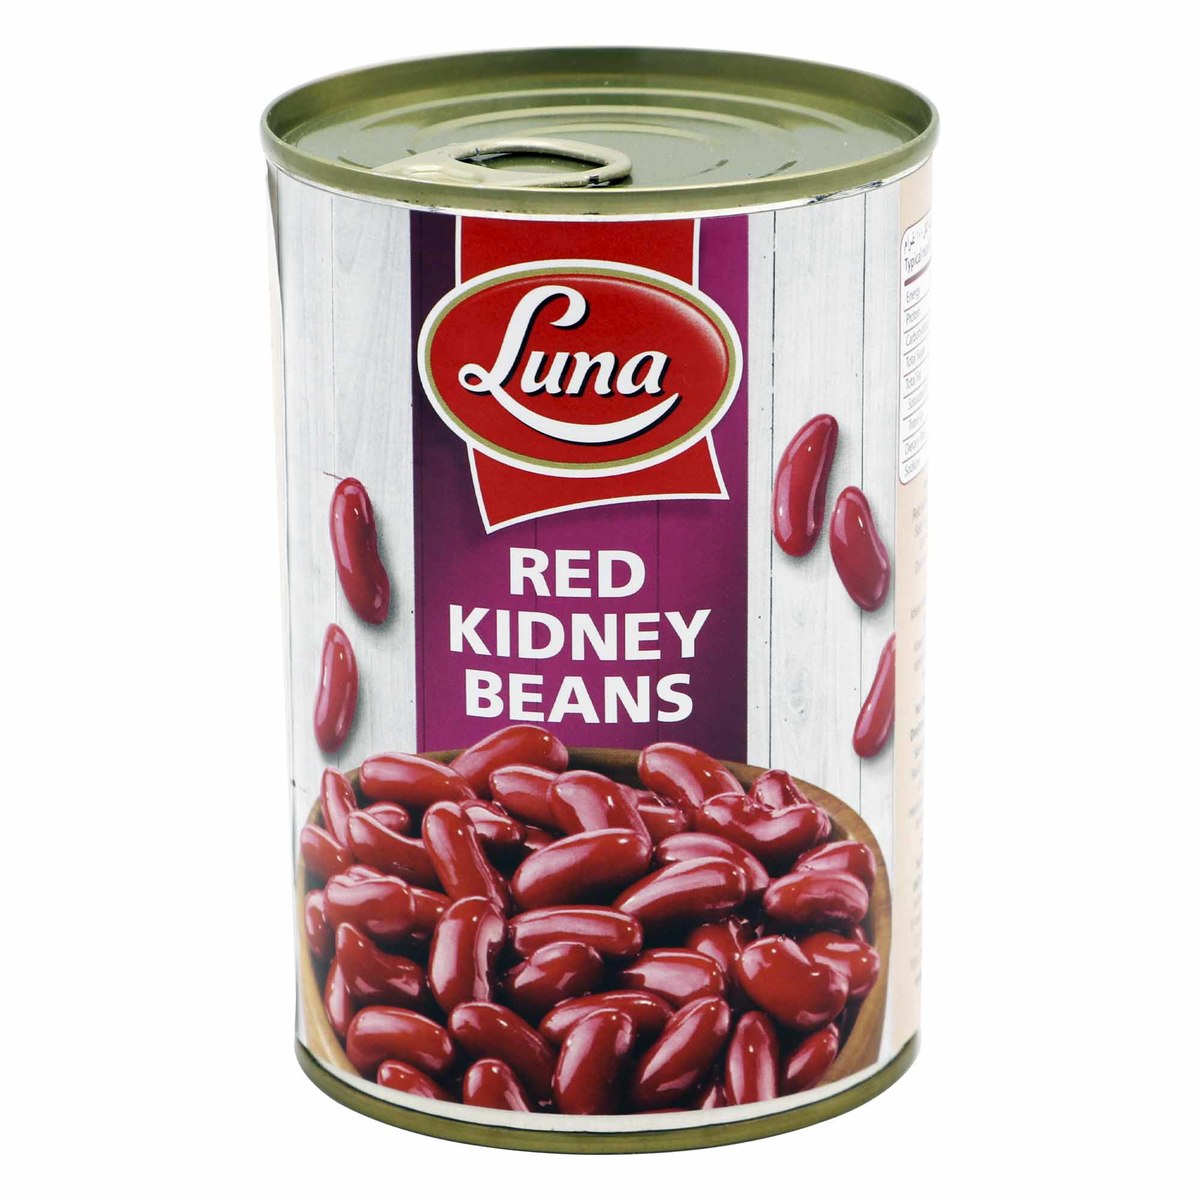 Luna Red Kidney Beans